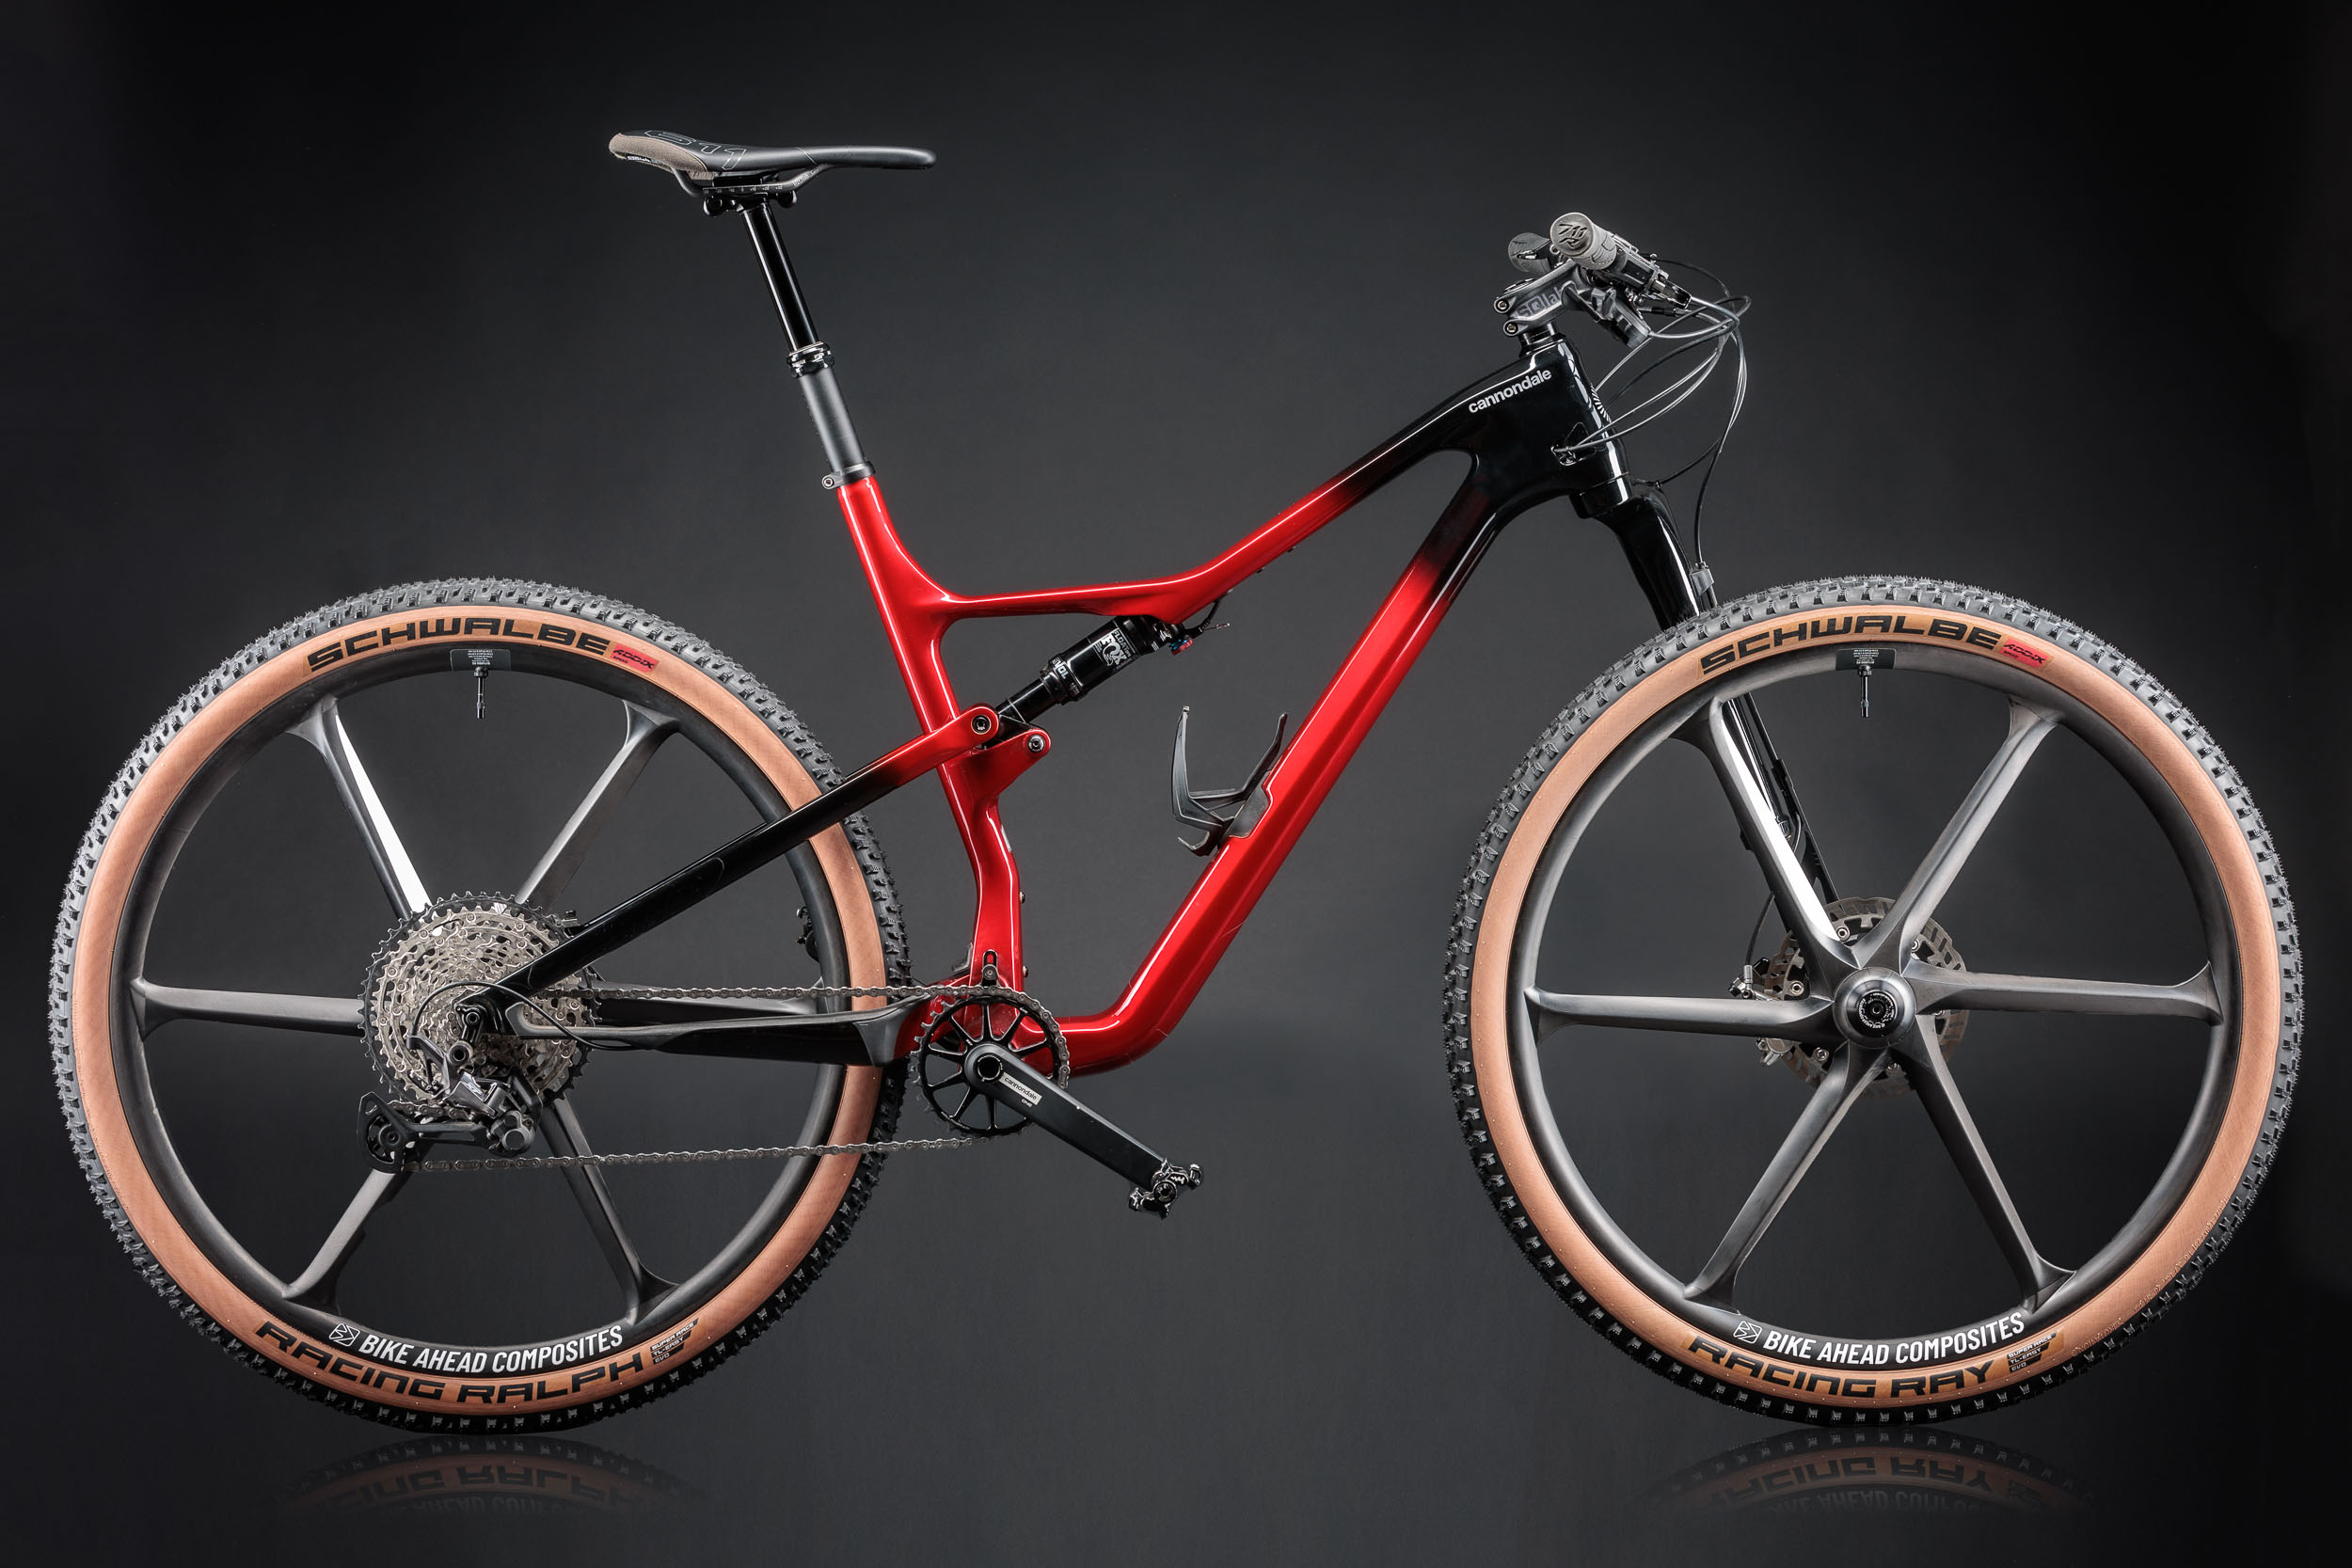 Bike Ahead Composites Biturbo RS Laufräder - Fotos, Test & News